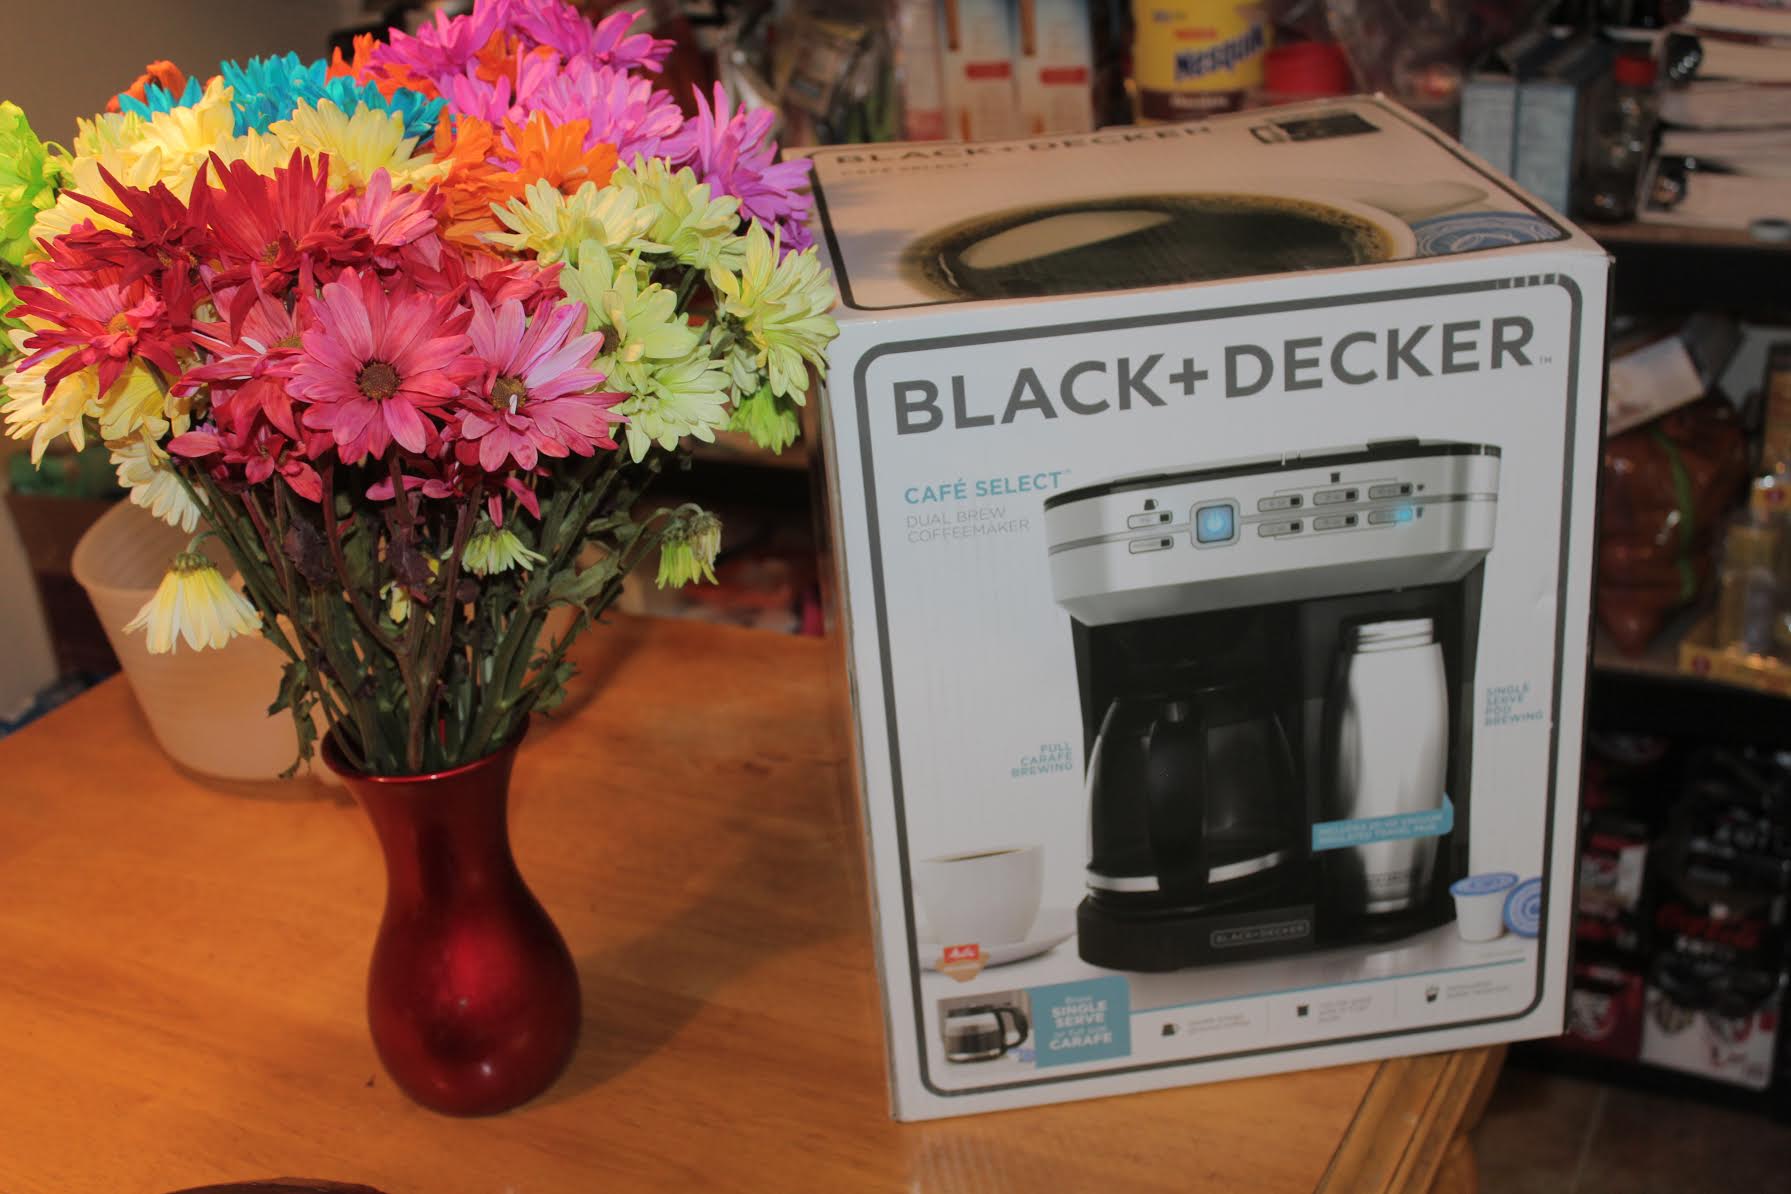 #BlackDecker #Kitchen #foodie #coffee #ad